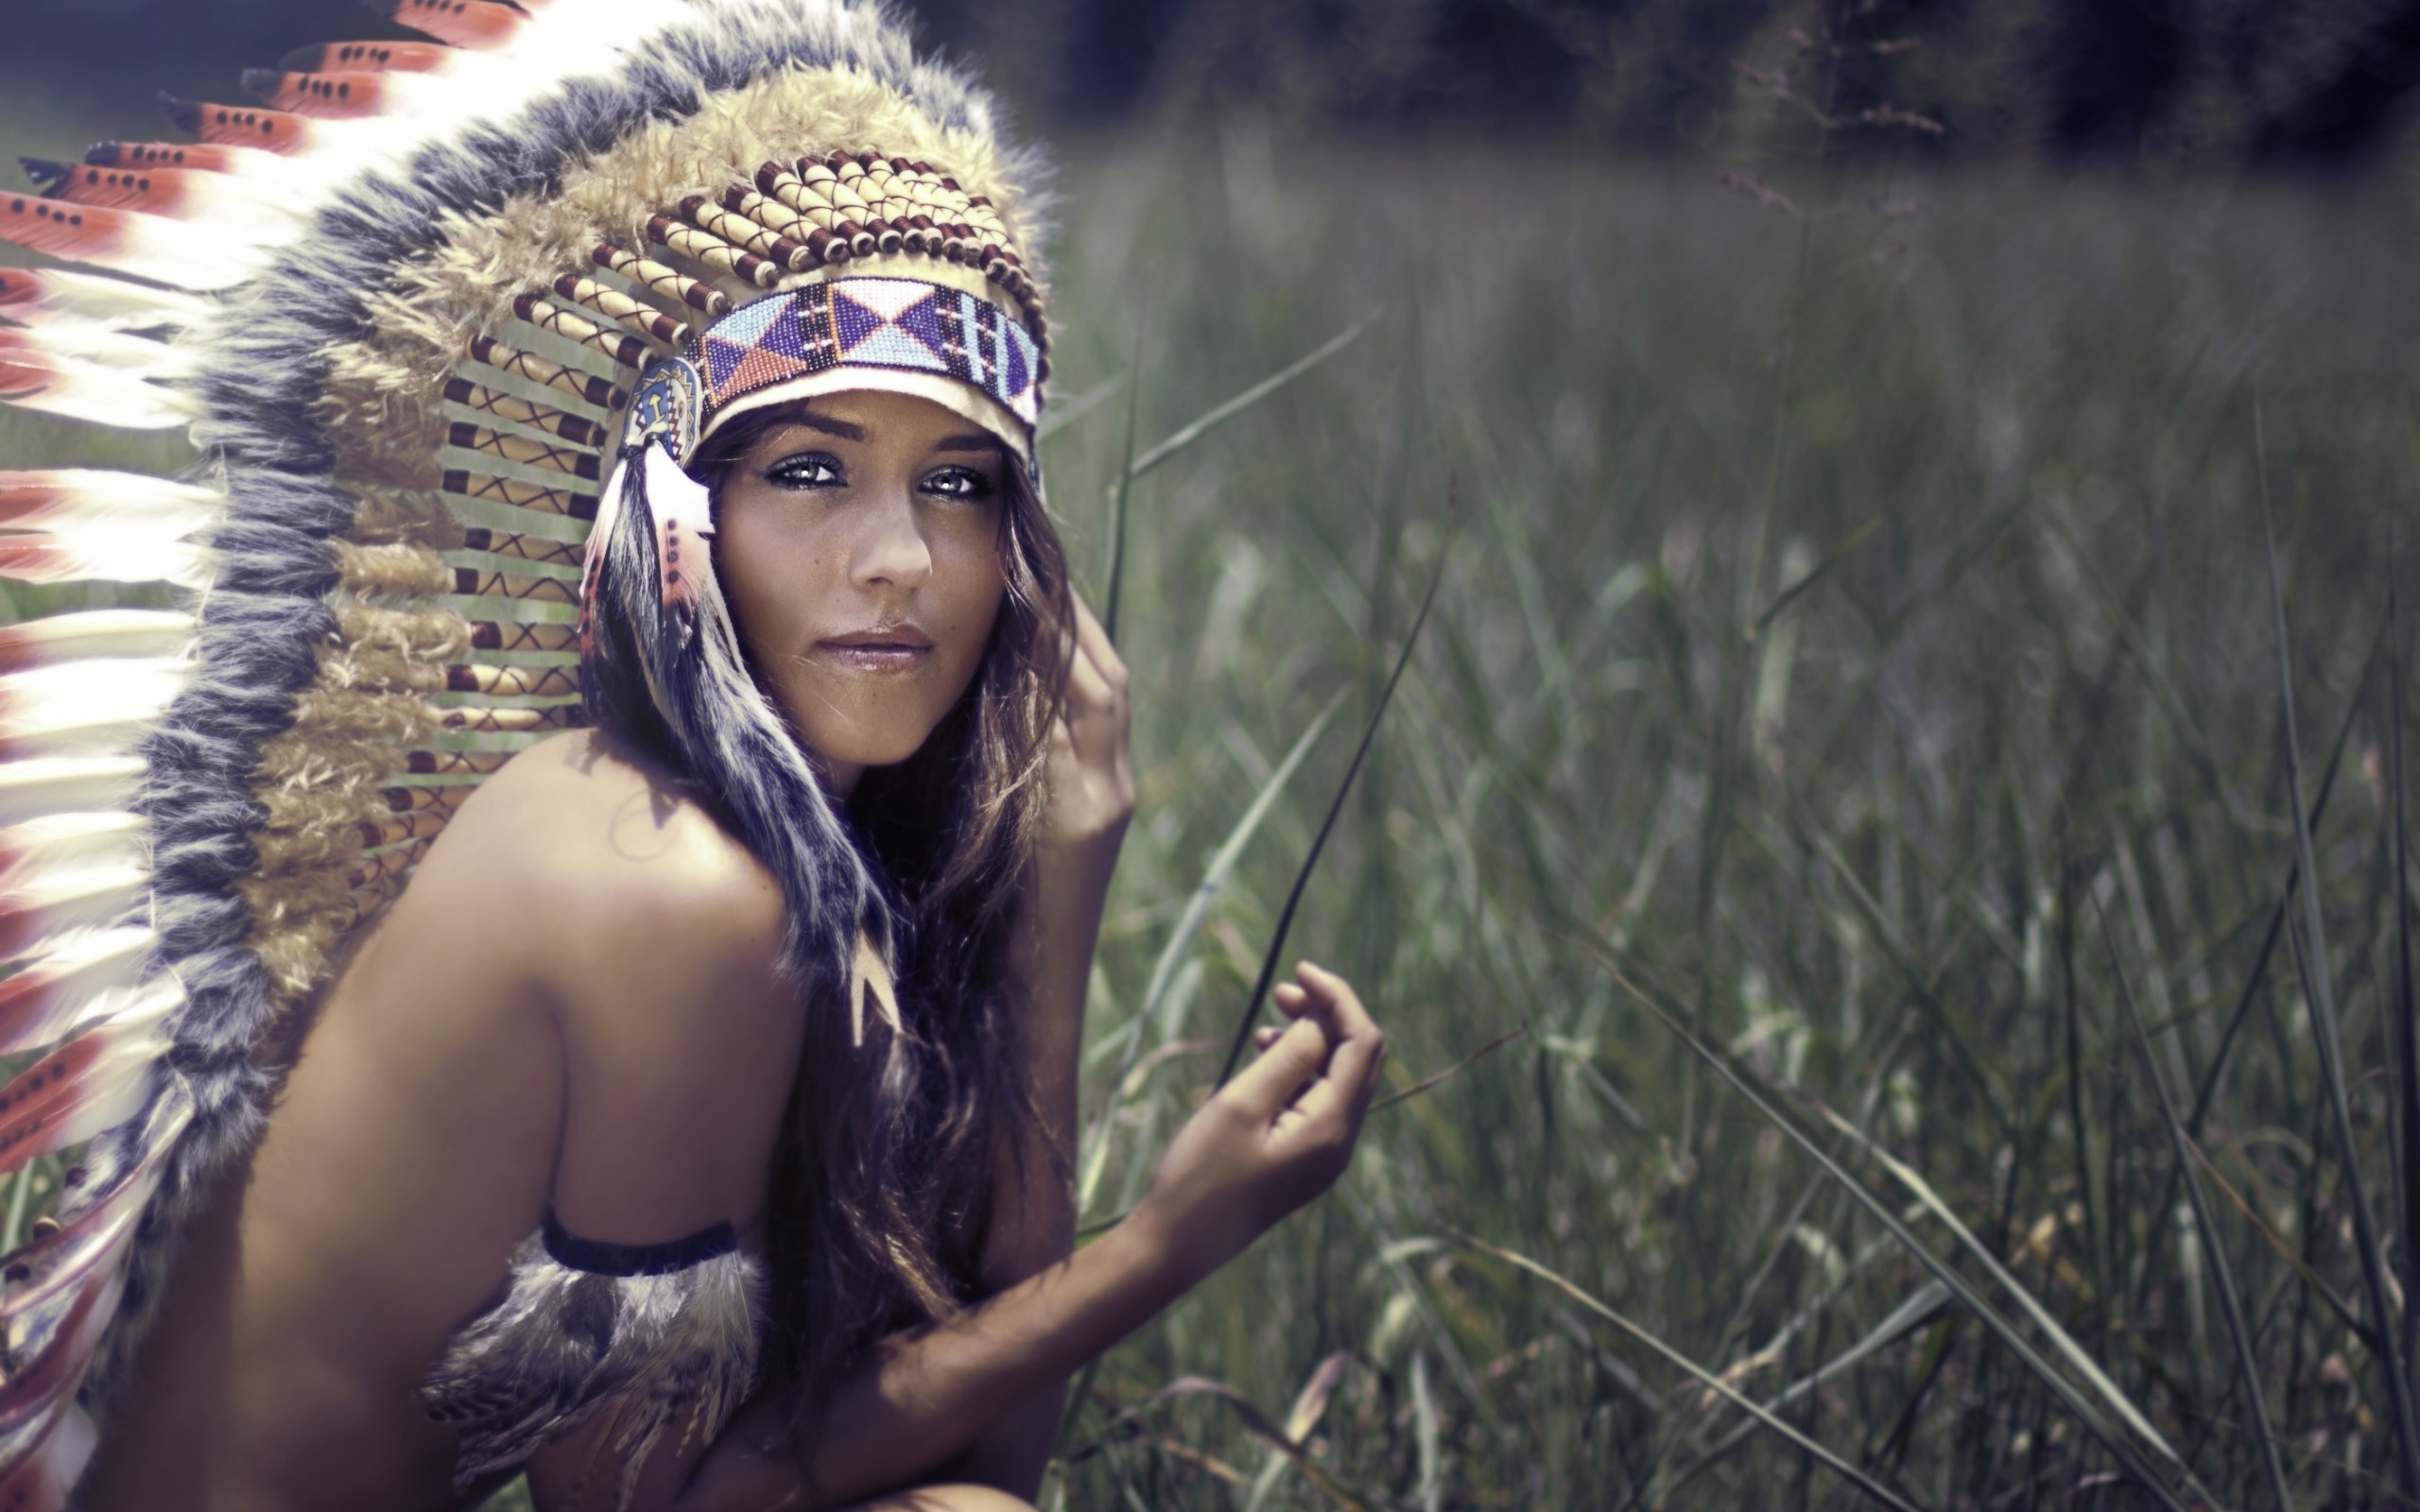 Wallpaper wiki native americans brunette headdress women strategic covering